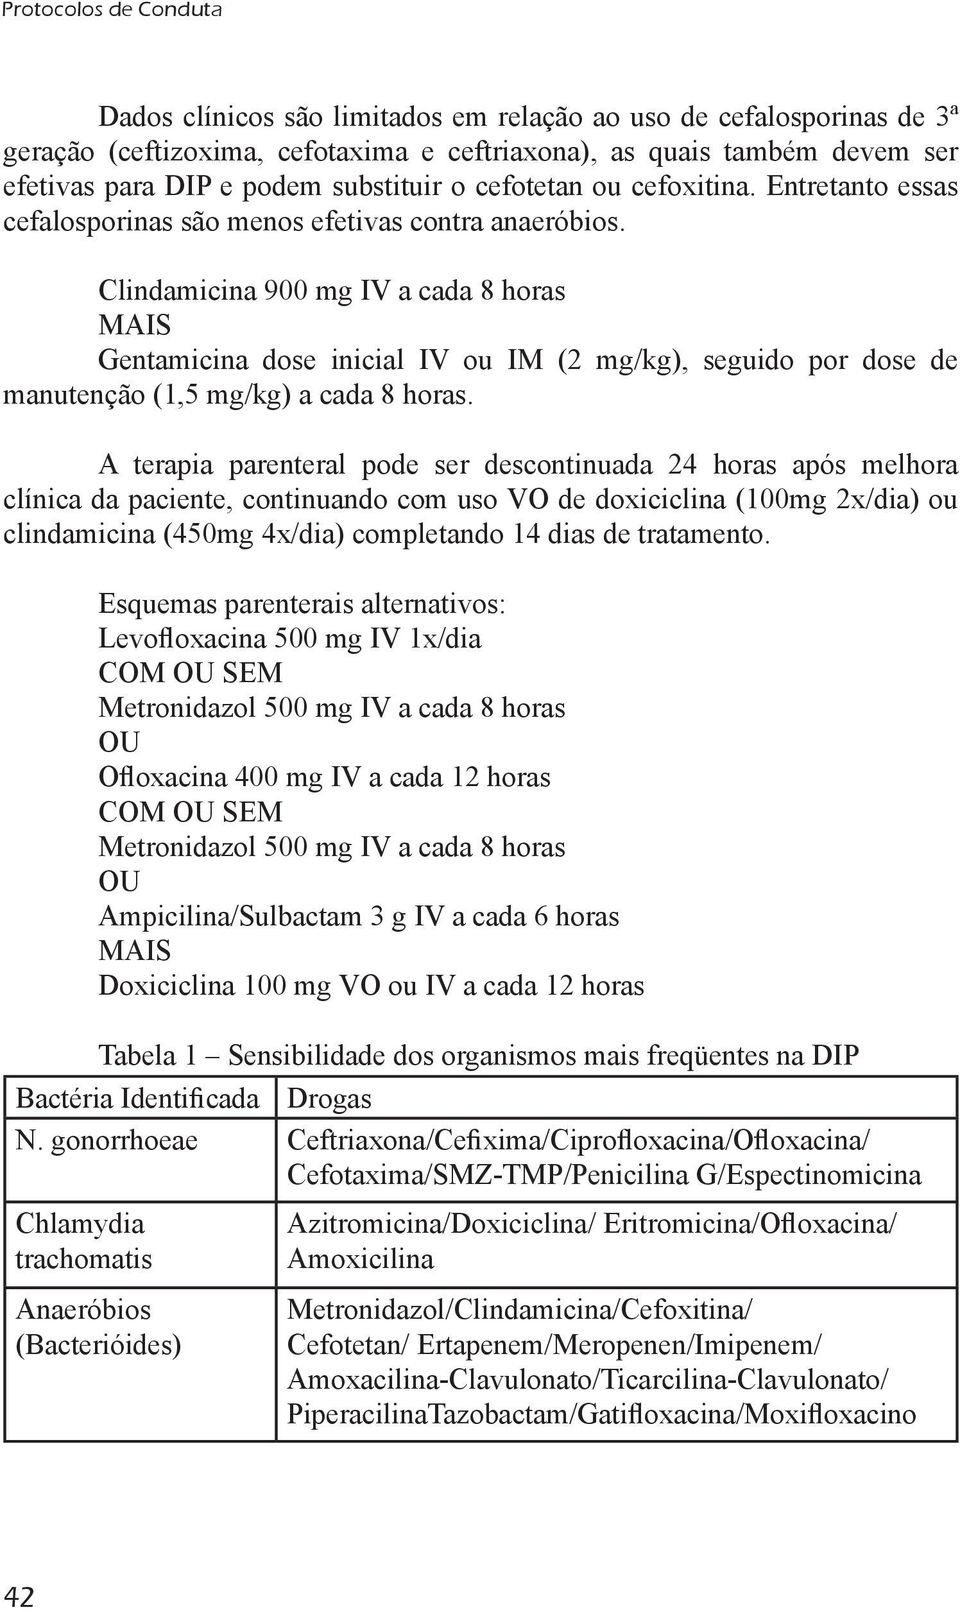 Clindamicina 900 mg IV a cada 8 horas MAIS Gentamicina dose inicial IV ou IM (2 mg/kg), seguido por dose de manutenção (1,5 mg/kg) a cada 8 horas.